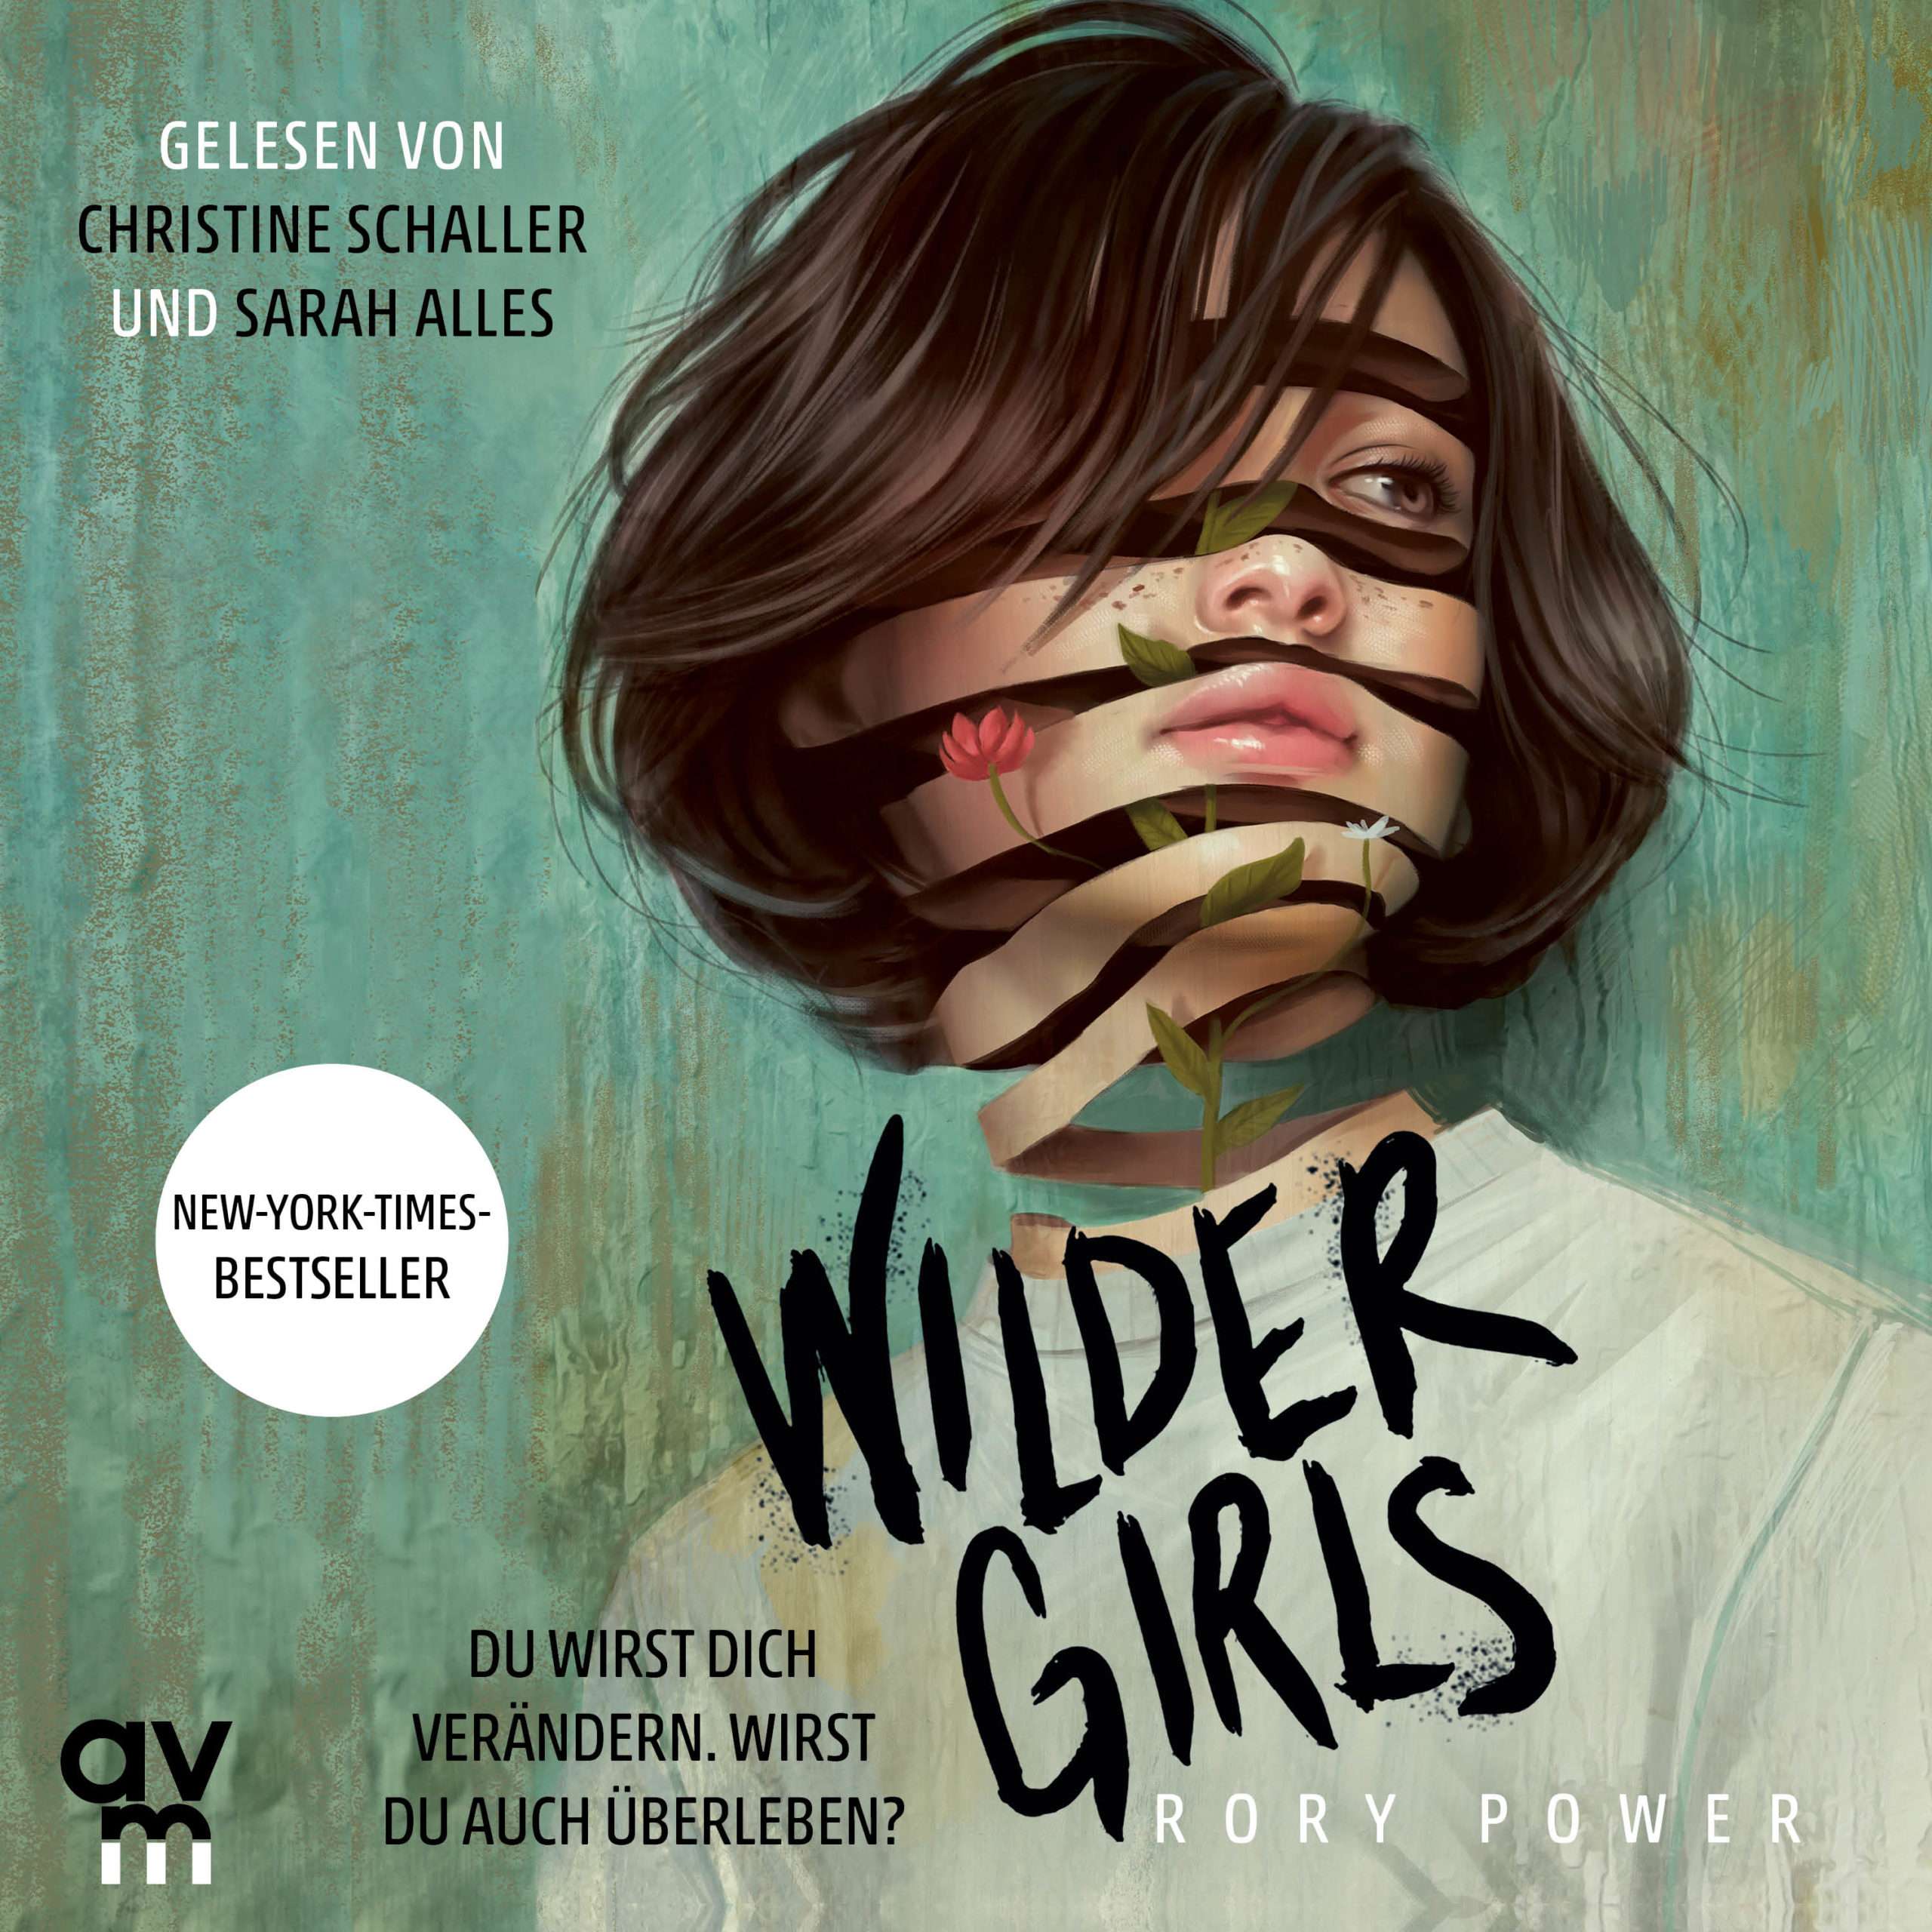 Cover Hörbuch "Wilder Girls" gesprochen von Christine Schaller, Sprecherin aus Köln